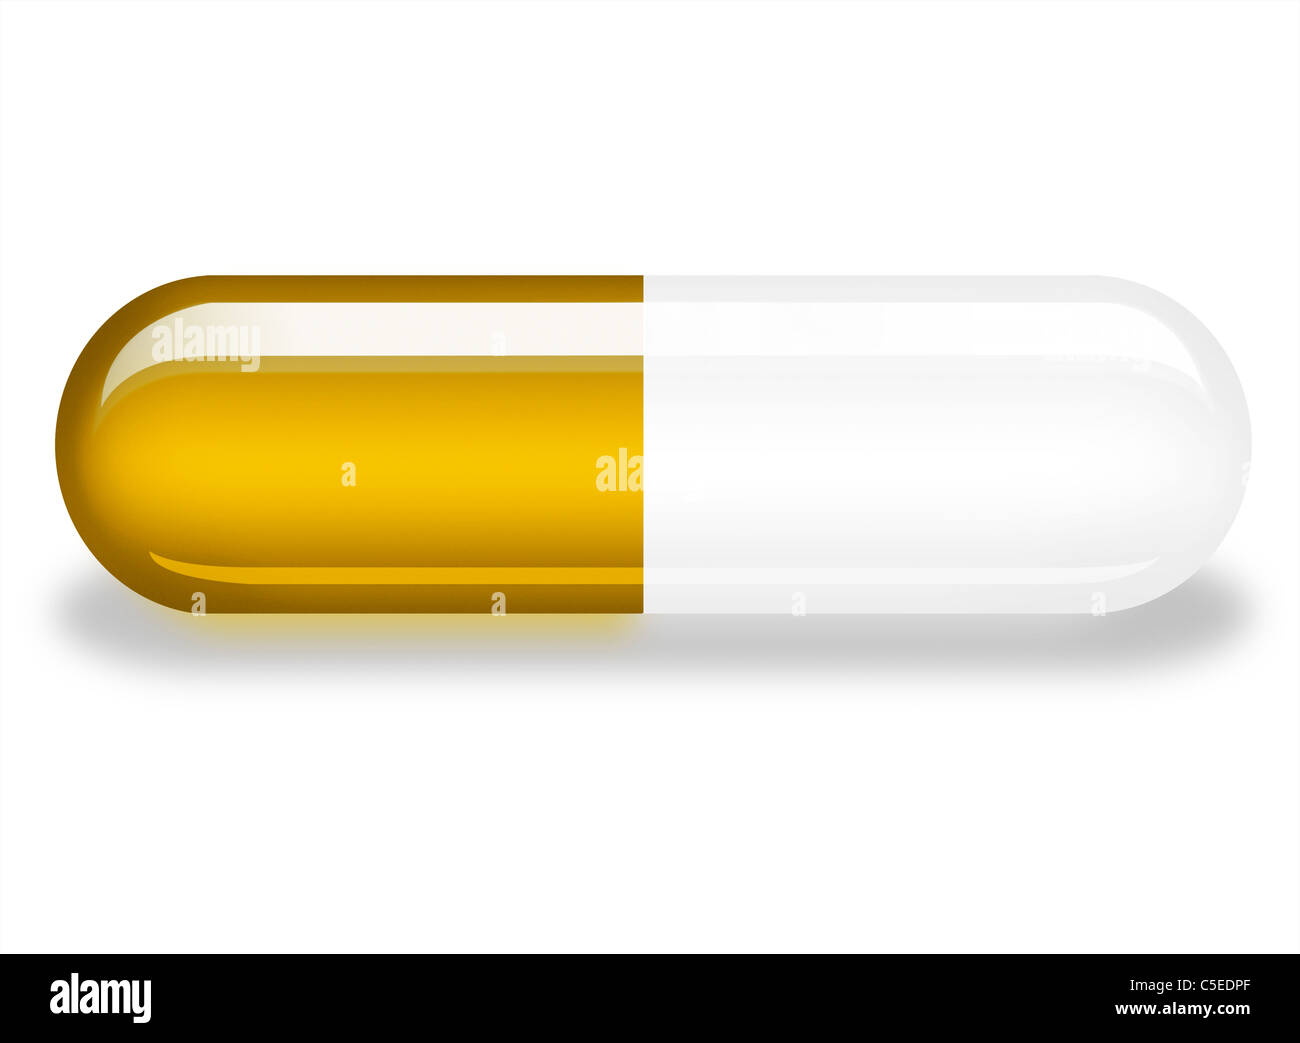 Illustrazione di un singolo Tamiflu capsule su sfondo bianco con ombra. farmaco per la specie suina e influenza aviaria Foto Stock